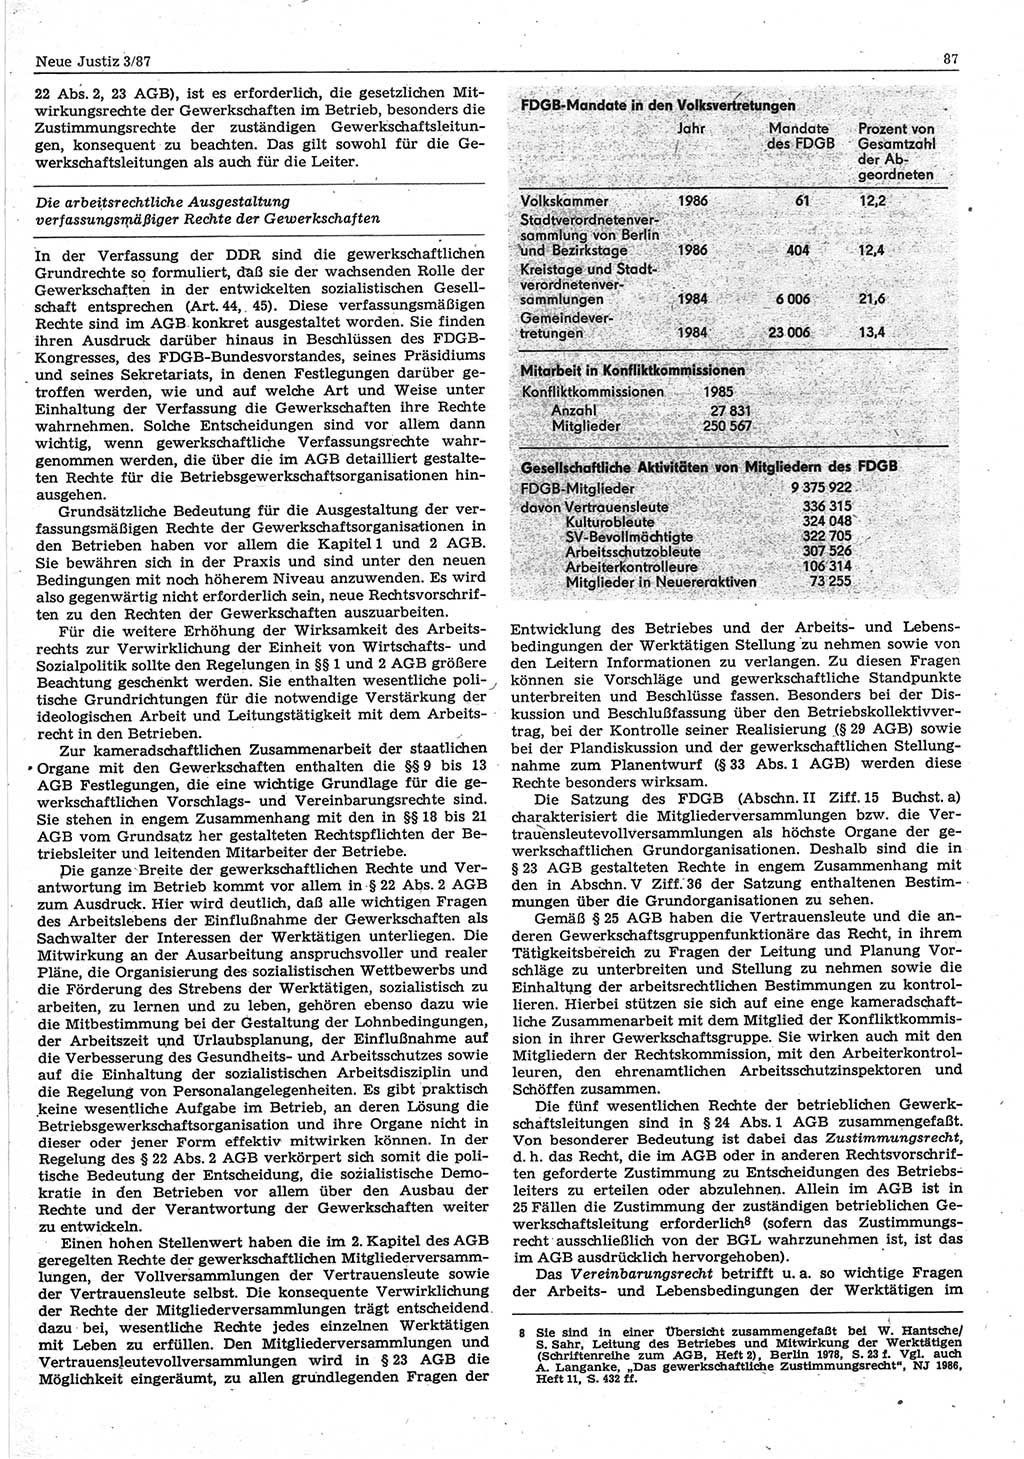 Neue Justiz (NJ), Zeitschrift für sozialistisches Recht und Gesetzlichkeit [Deutsche Demokratische Republik (DDR)], 41. Jahrgang 1987, Seite 87 (NJ DDR 1987, S. 87)